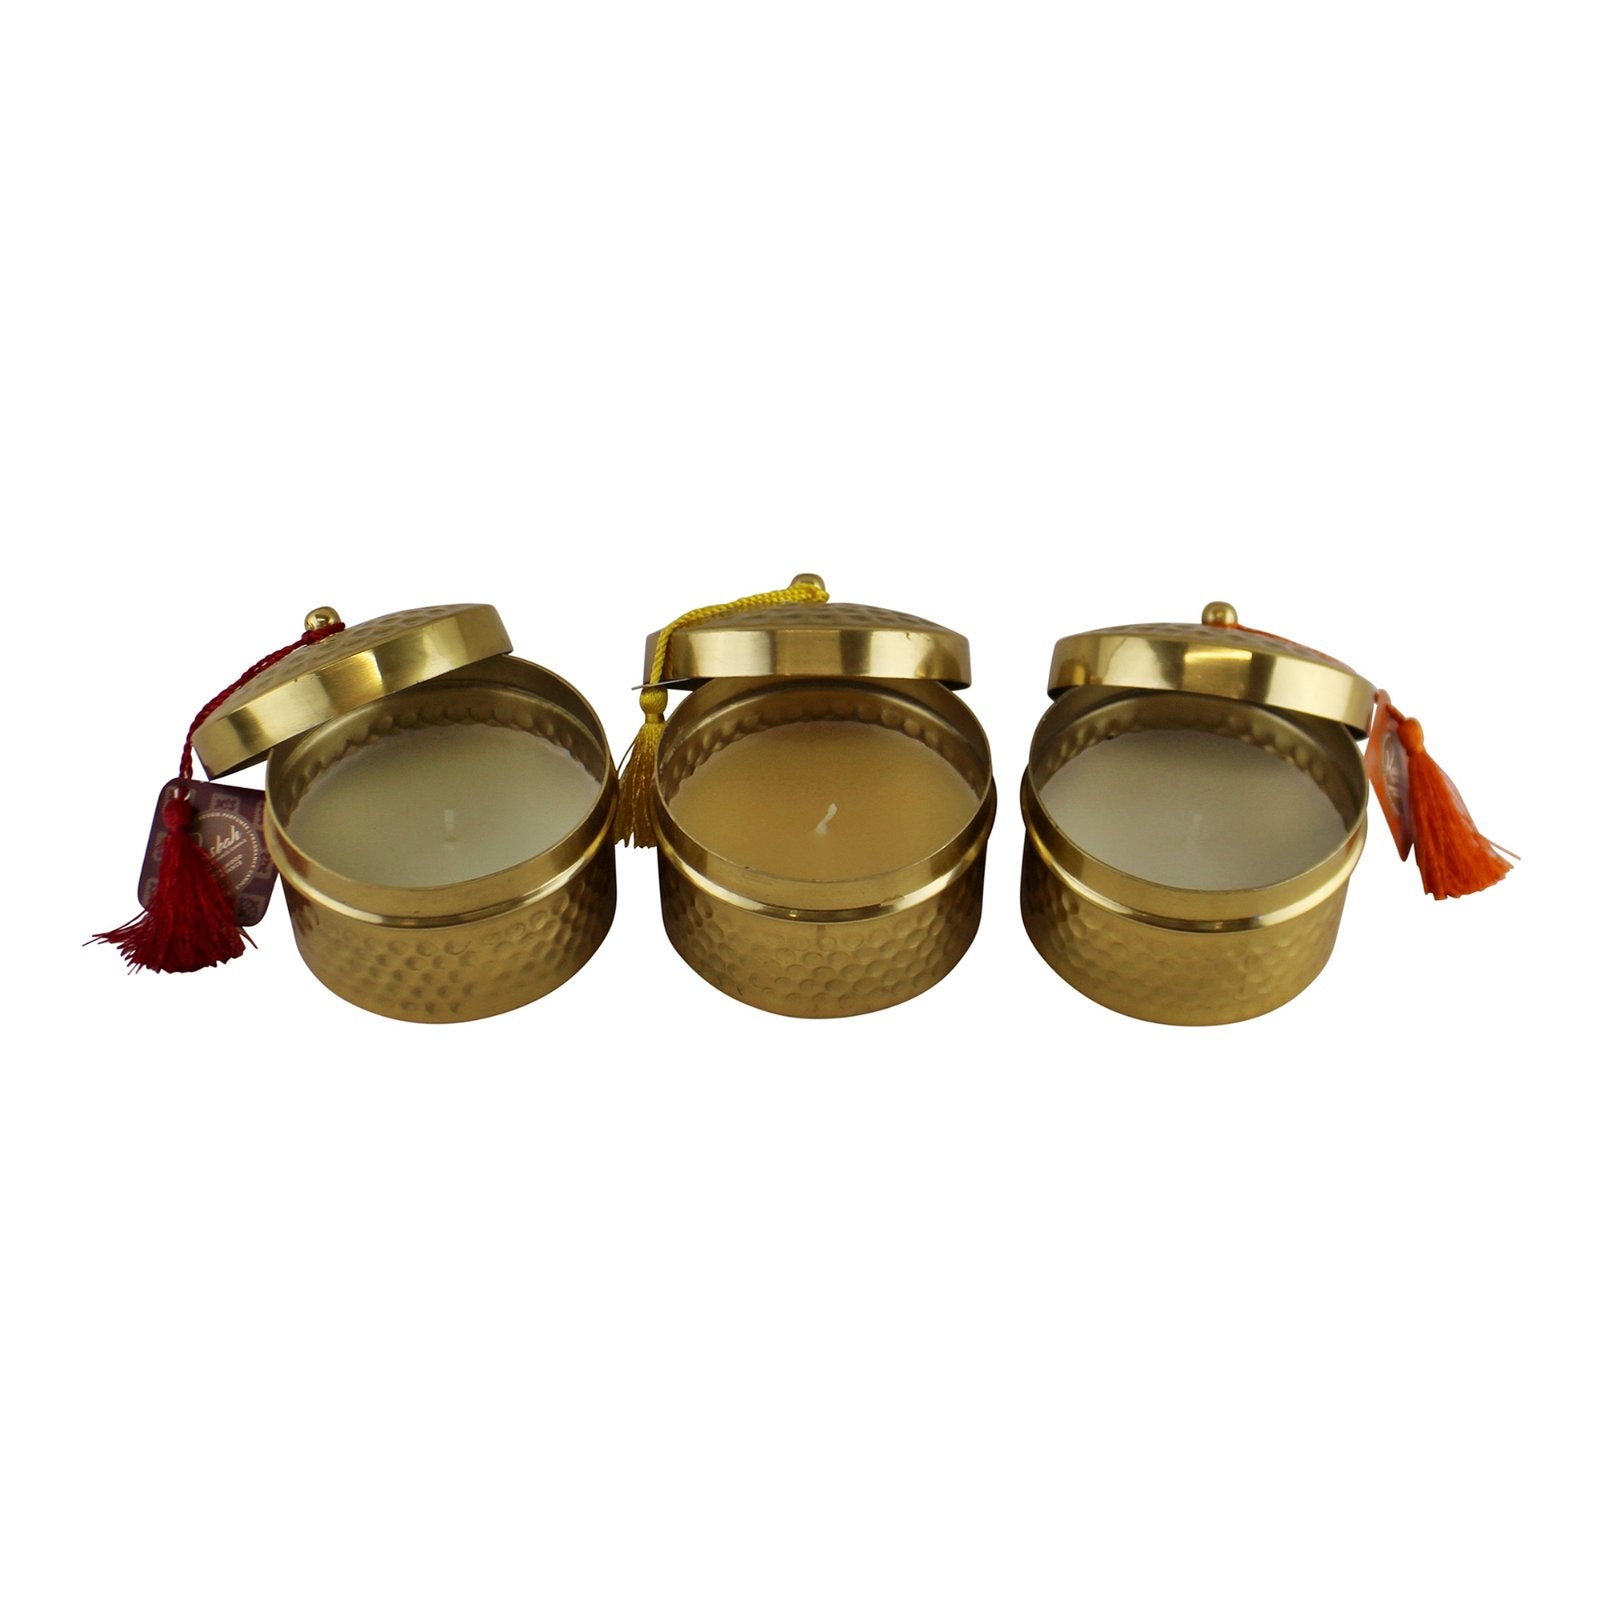 Set of 3 Kasbah Design Candlepots With Tassels